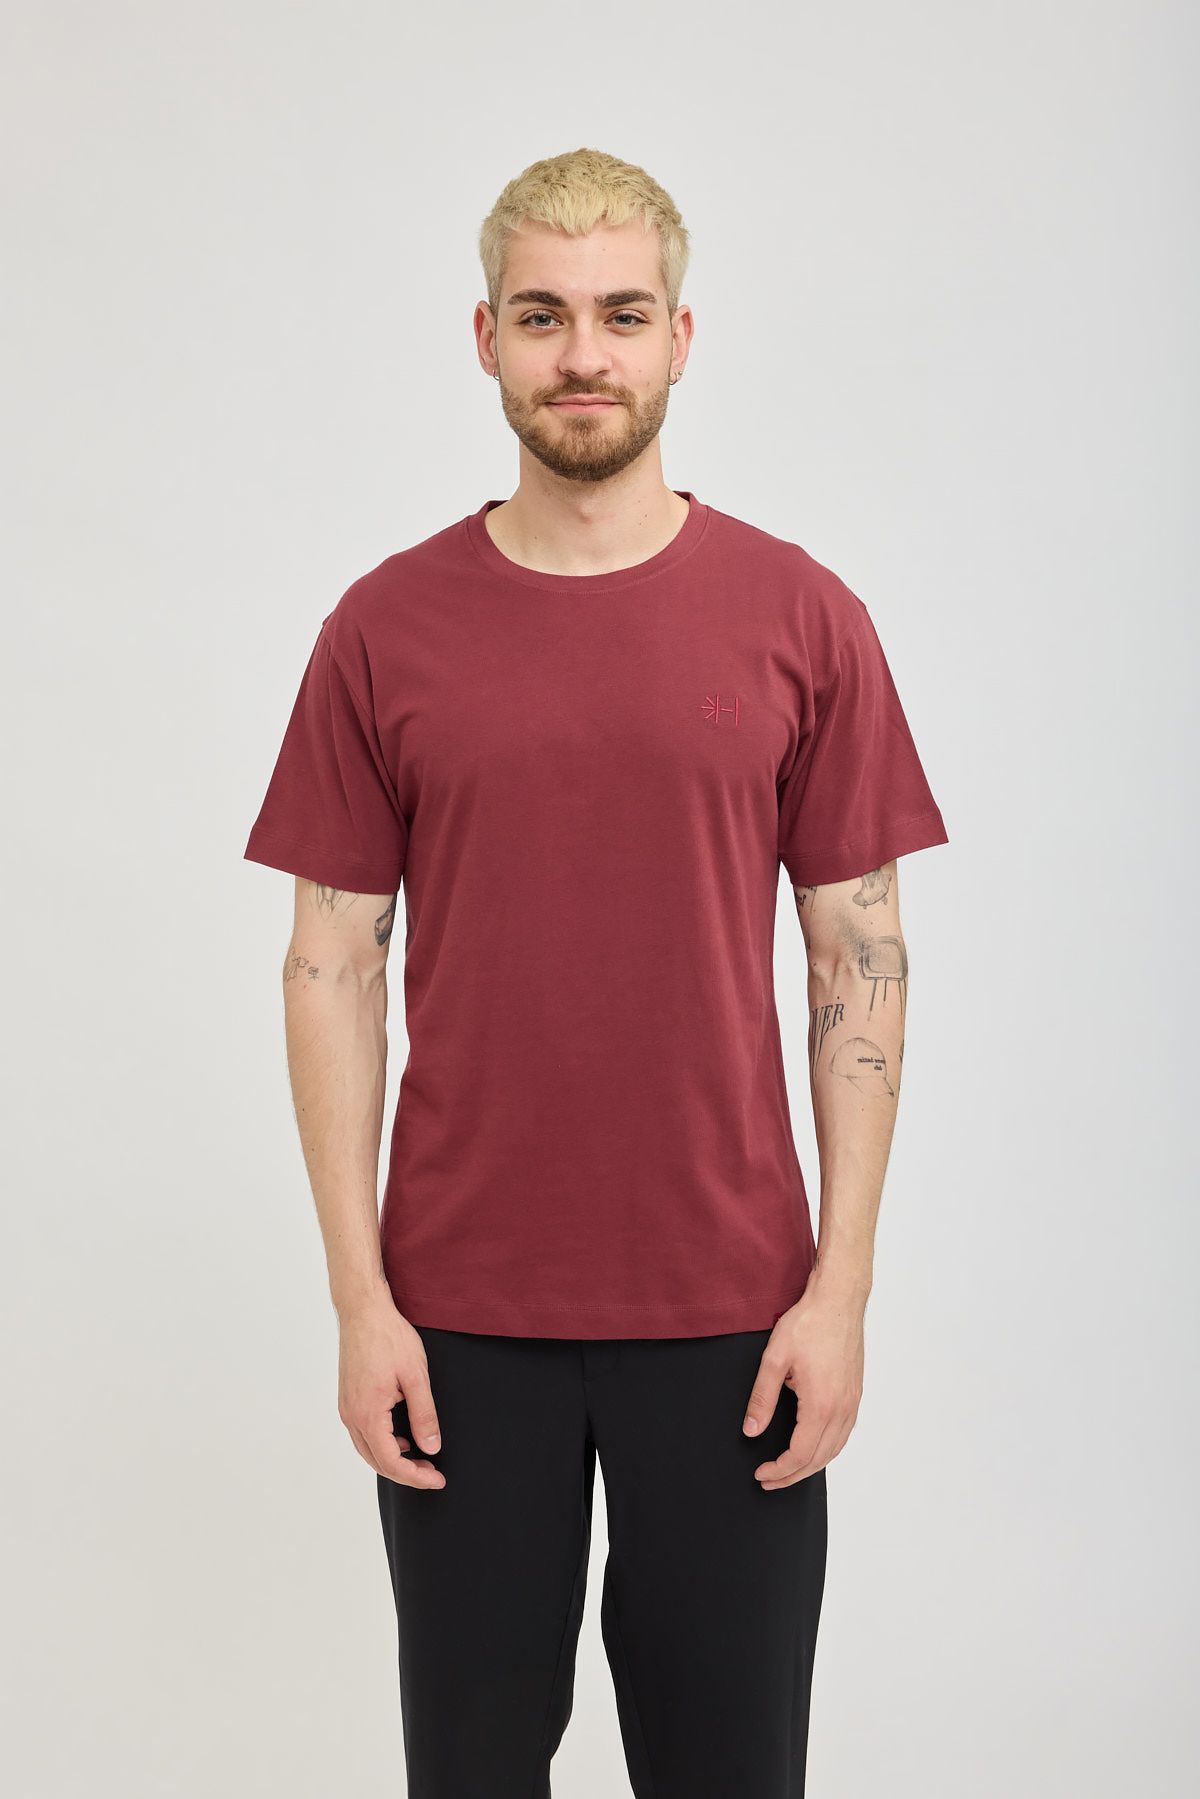 Männliches Model mit weinrotem USB-Merchandise T-Shirt